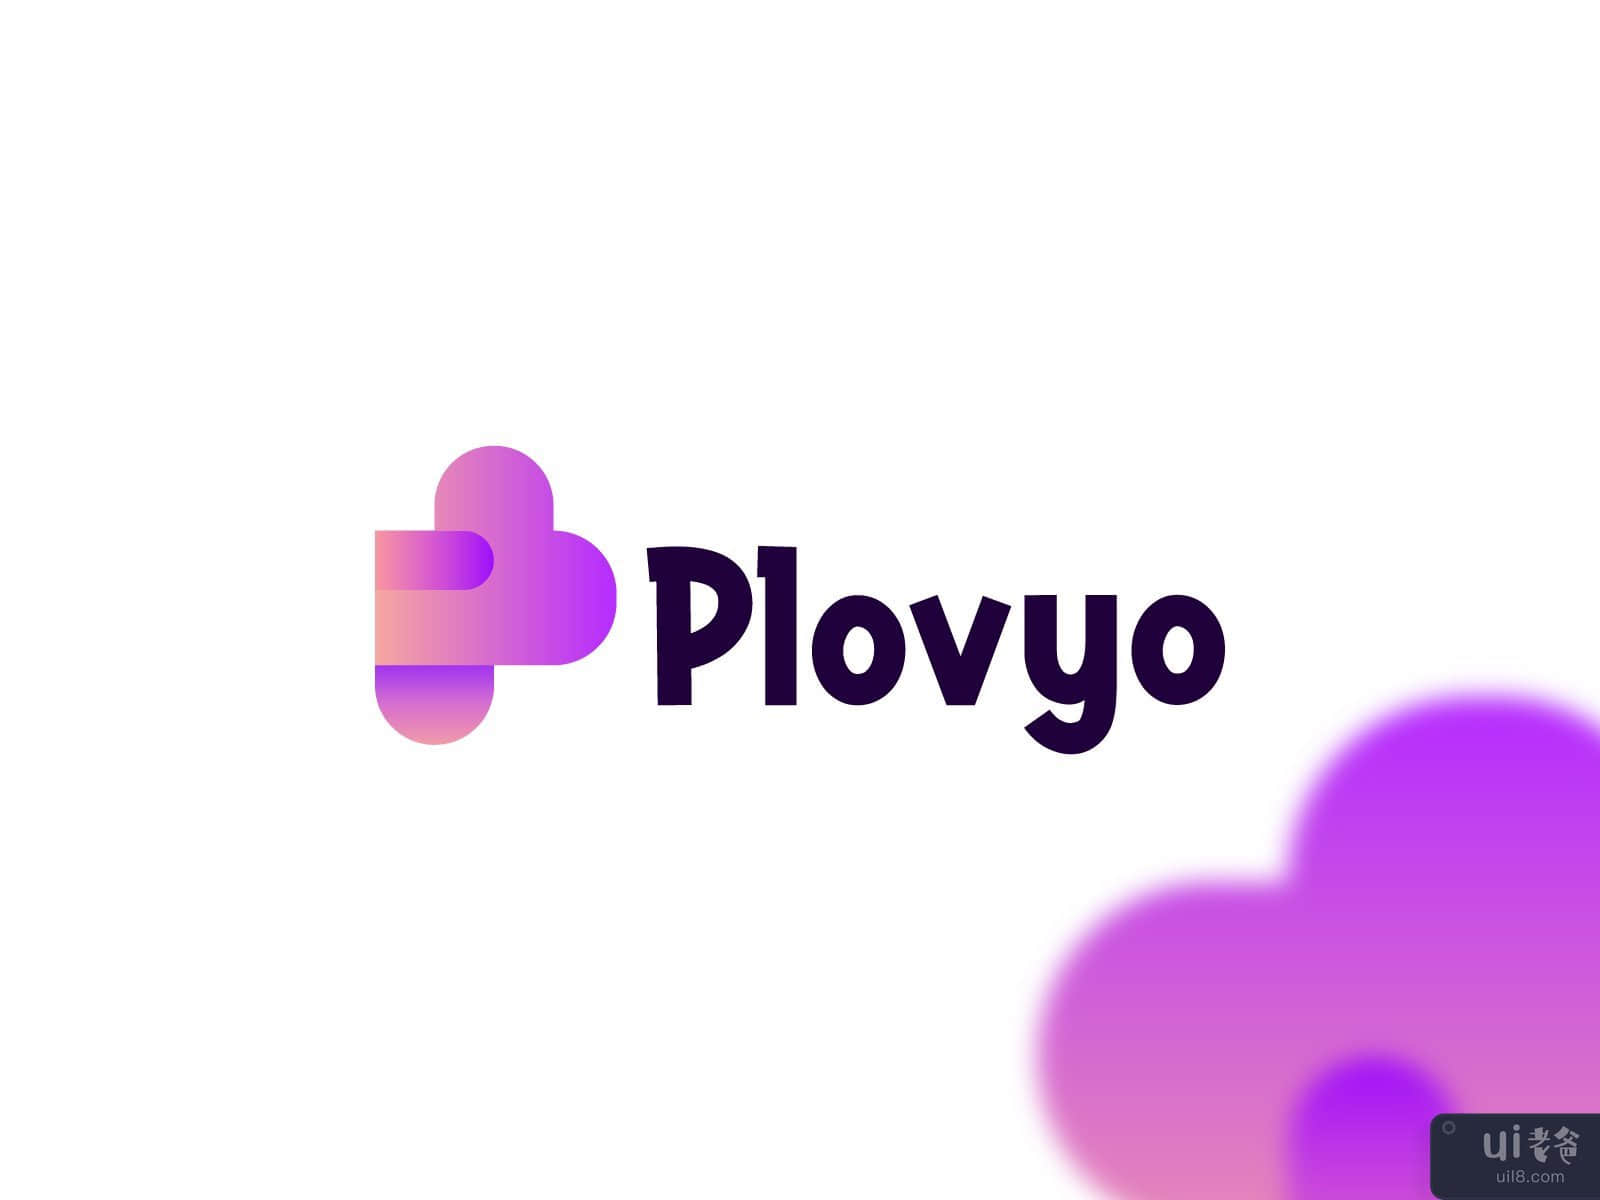 普洛维奥标志设计。字母 P 和爱的概念(Plovyo logo design. Letter P and Love concepts)插图